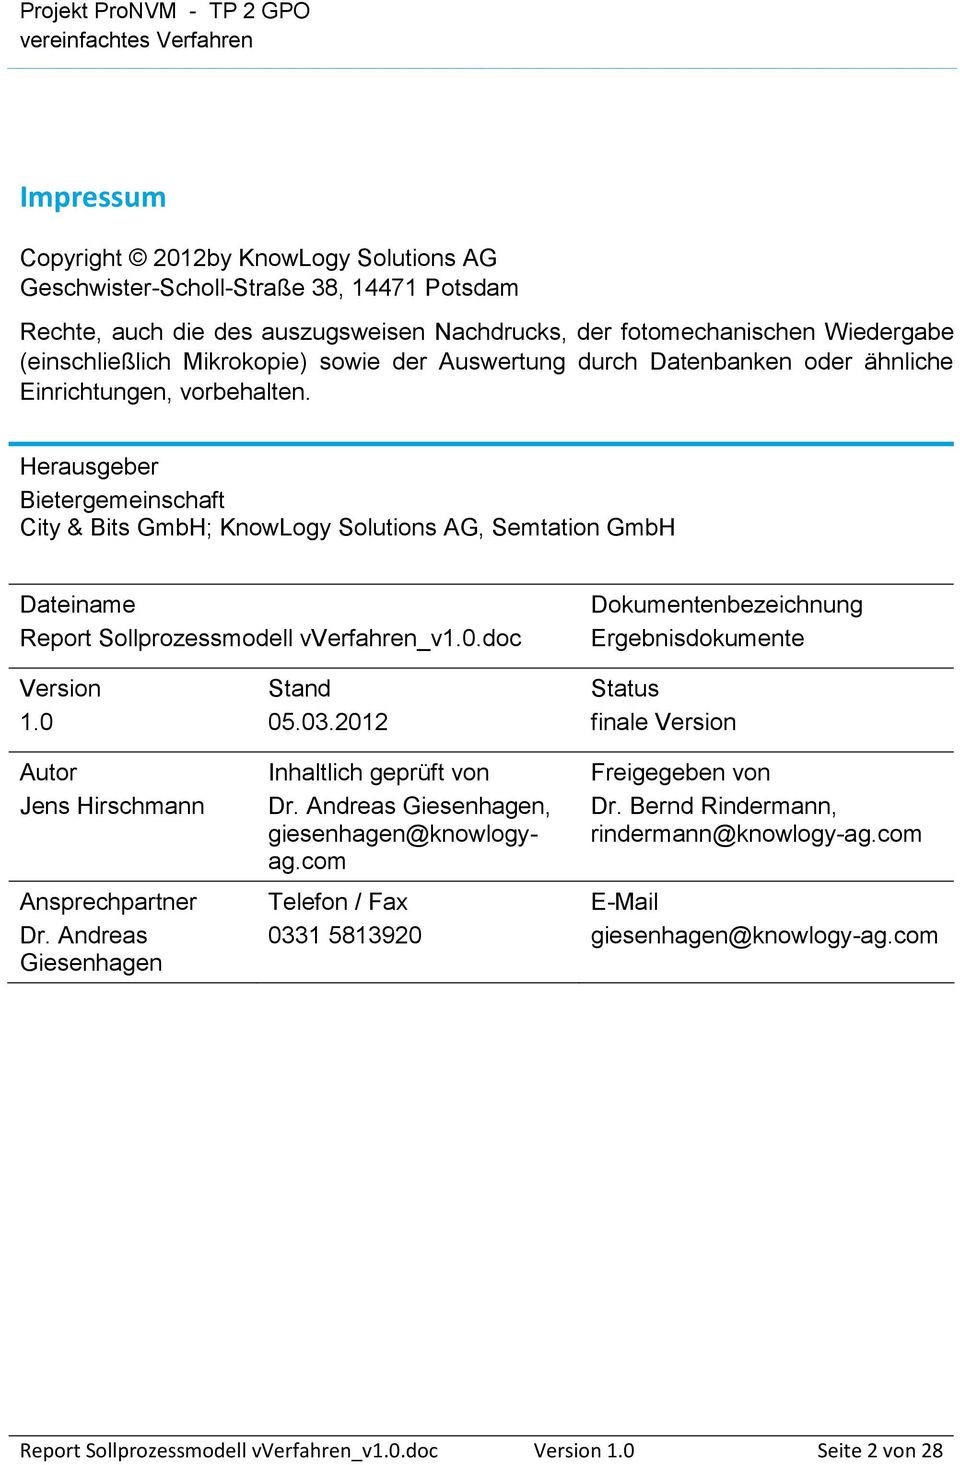 Herausgeber Bietergemeinschaft City & Bits GmbH; KnowLogy Solutions AG, Semtation GmbH Dateiname Report Sollprozessmodell vverfahren_v1.0.doc Dokumentenbezeichnung Ergebnisdokumente Version 1.